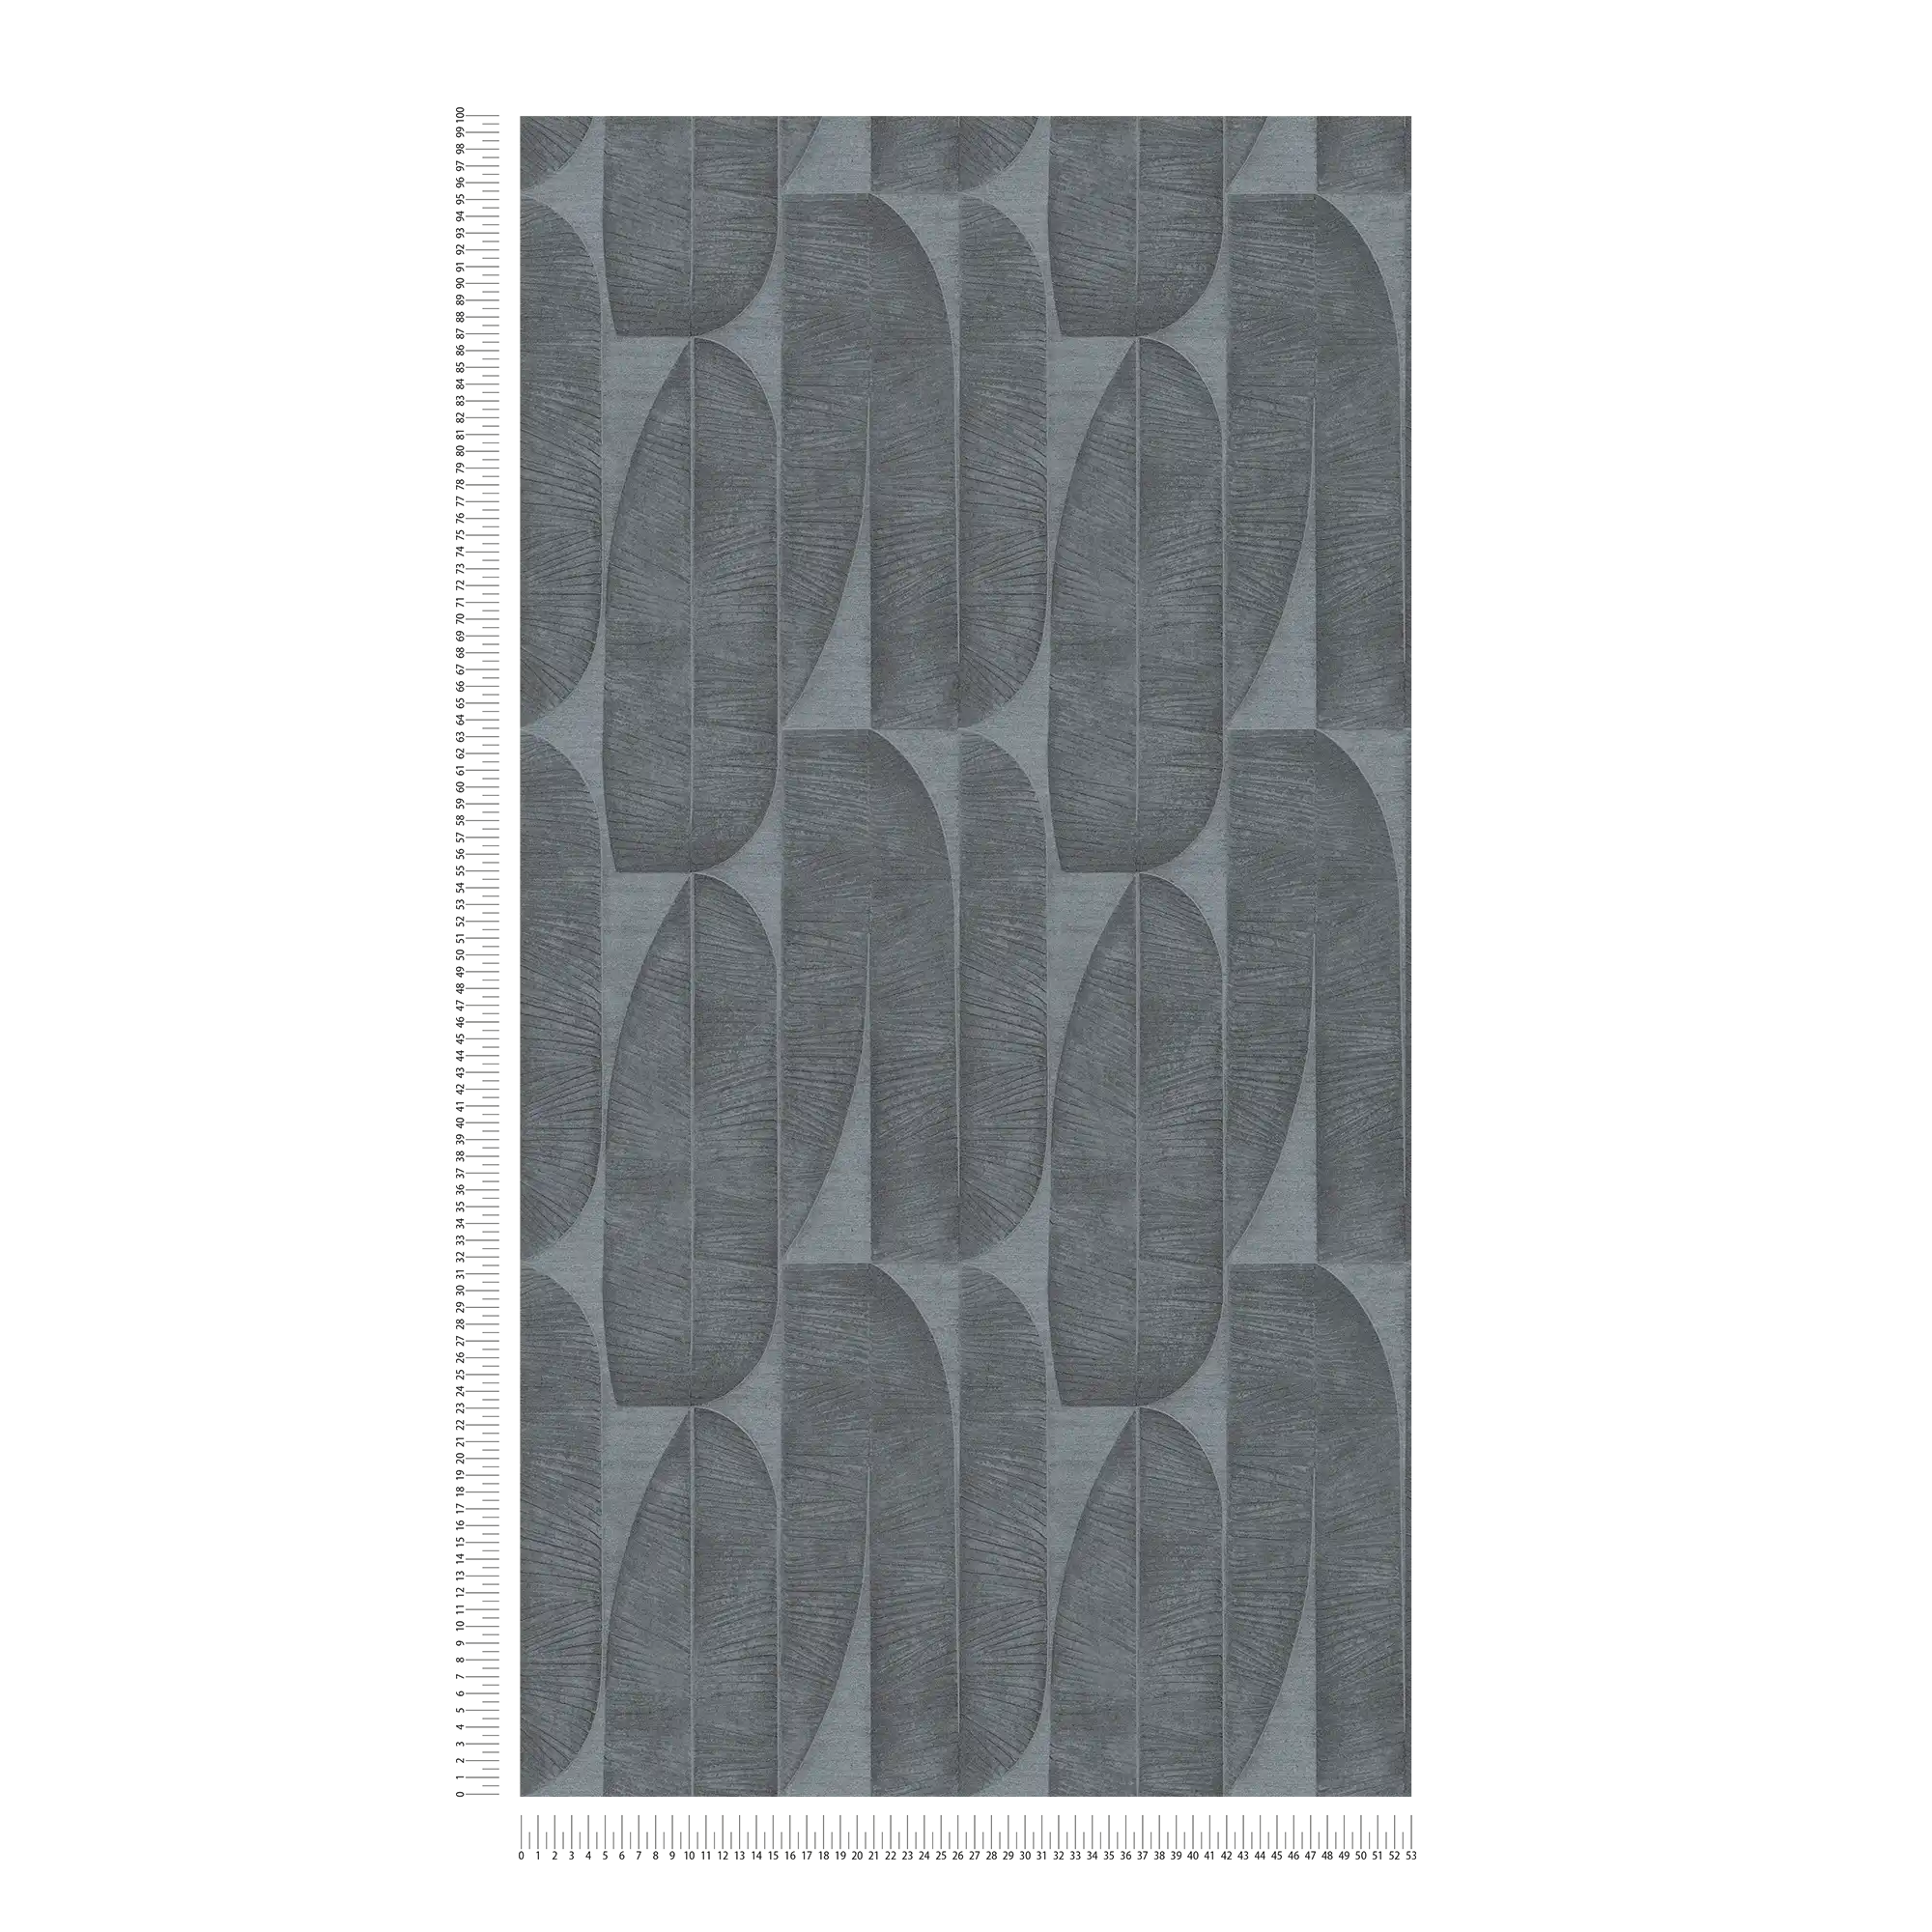             Onderlaag behang met geometrisch bloempatroon in bladlook - zwart, antraciet
        